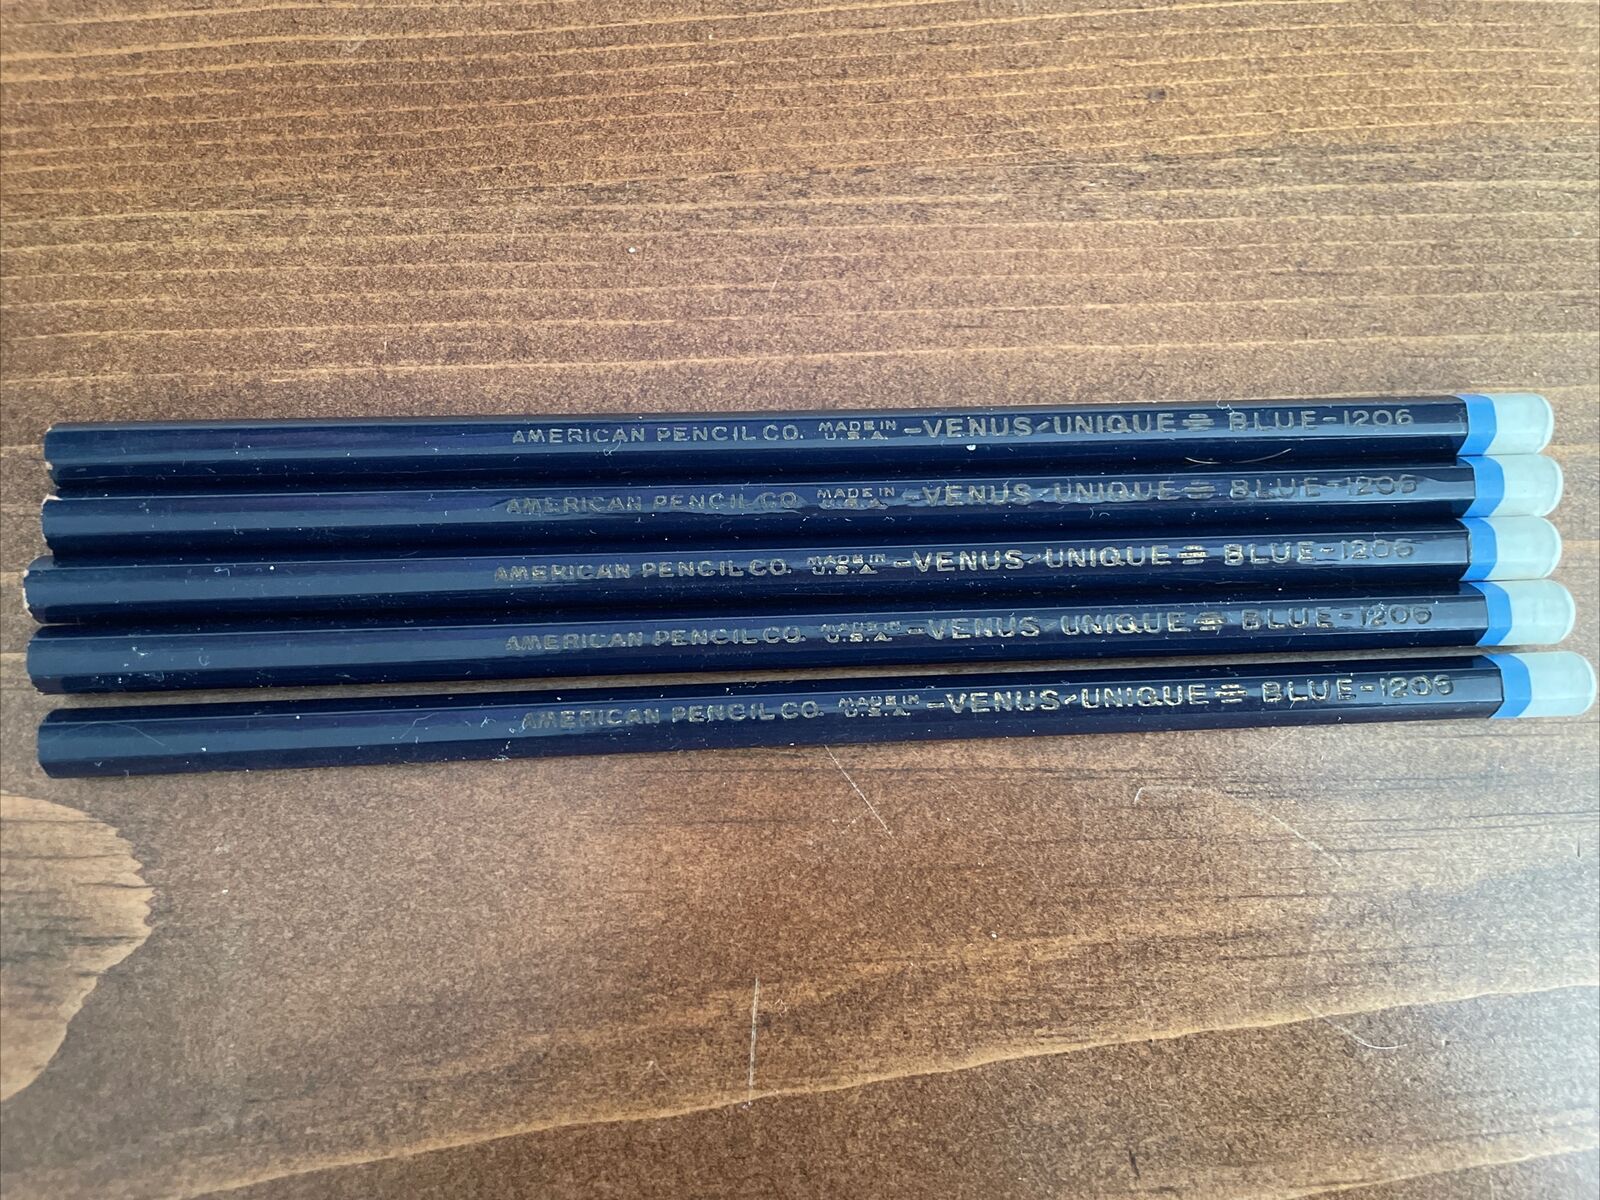 Venus Unique Blue 1206 vintage colored pencils lot of 5 unsharpened Waterproof